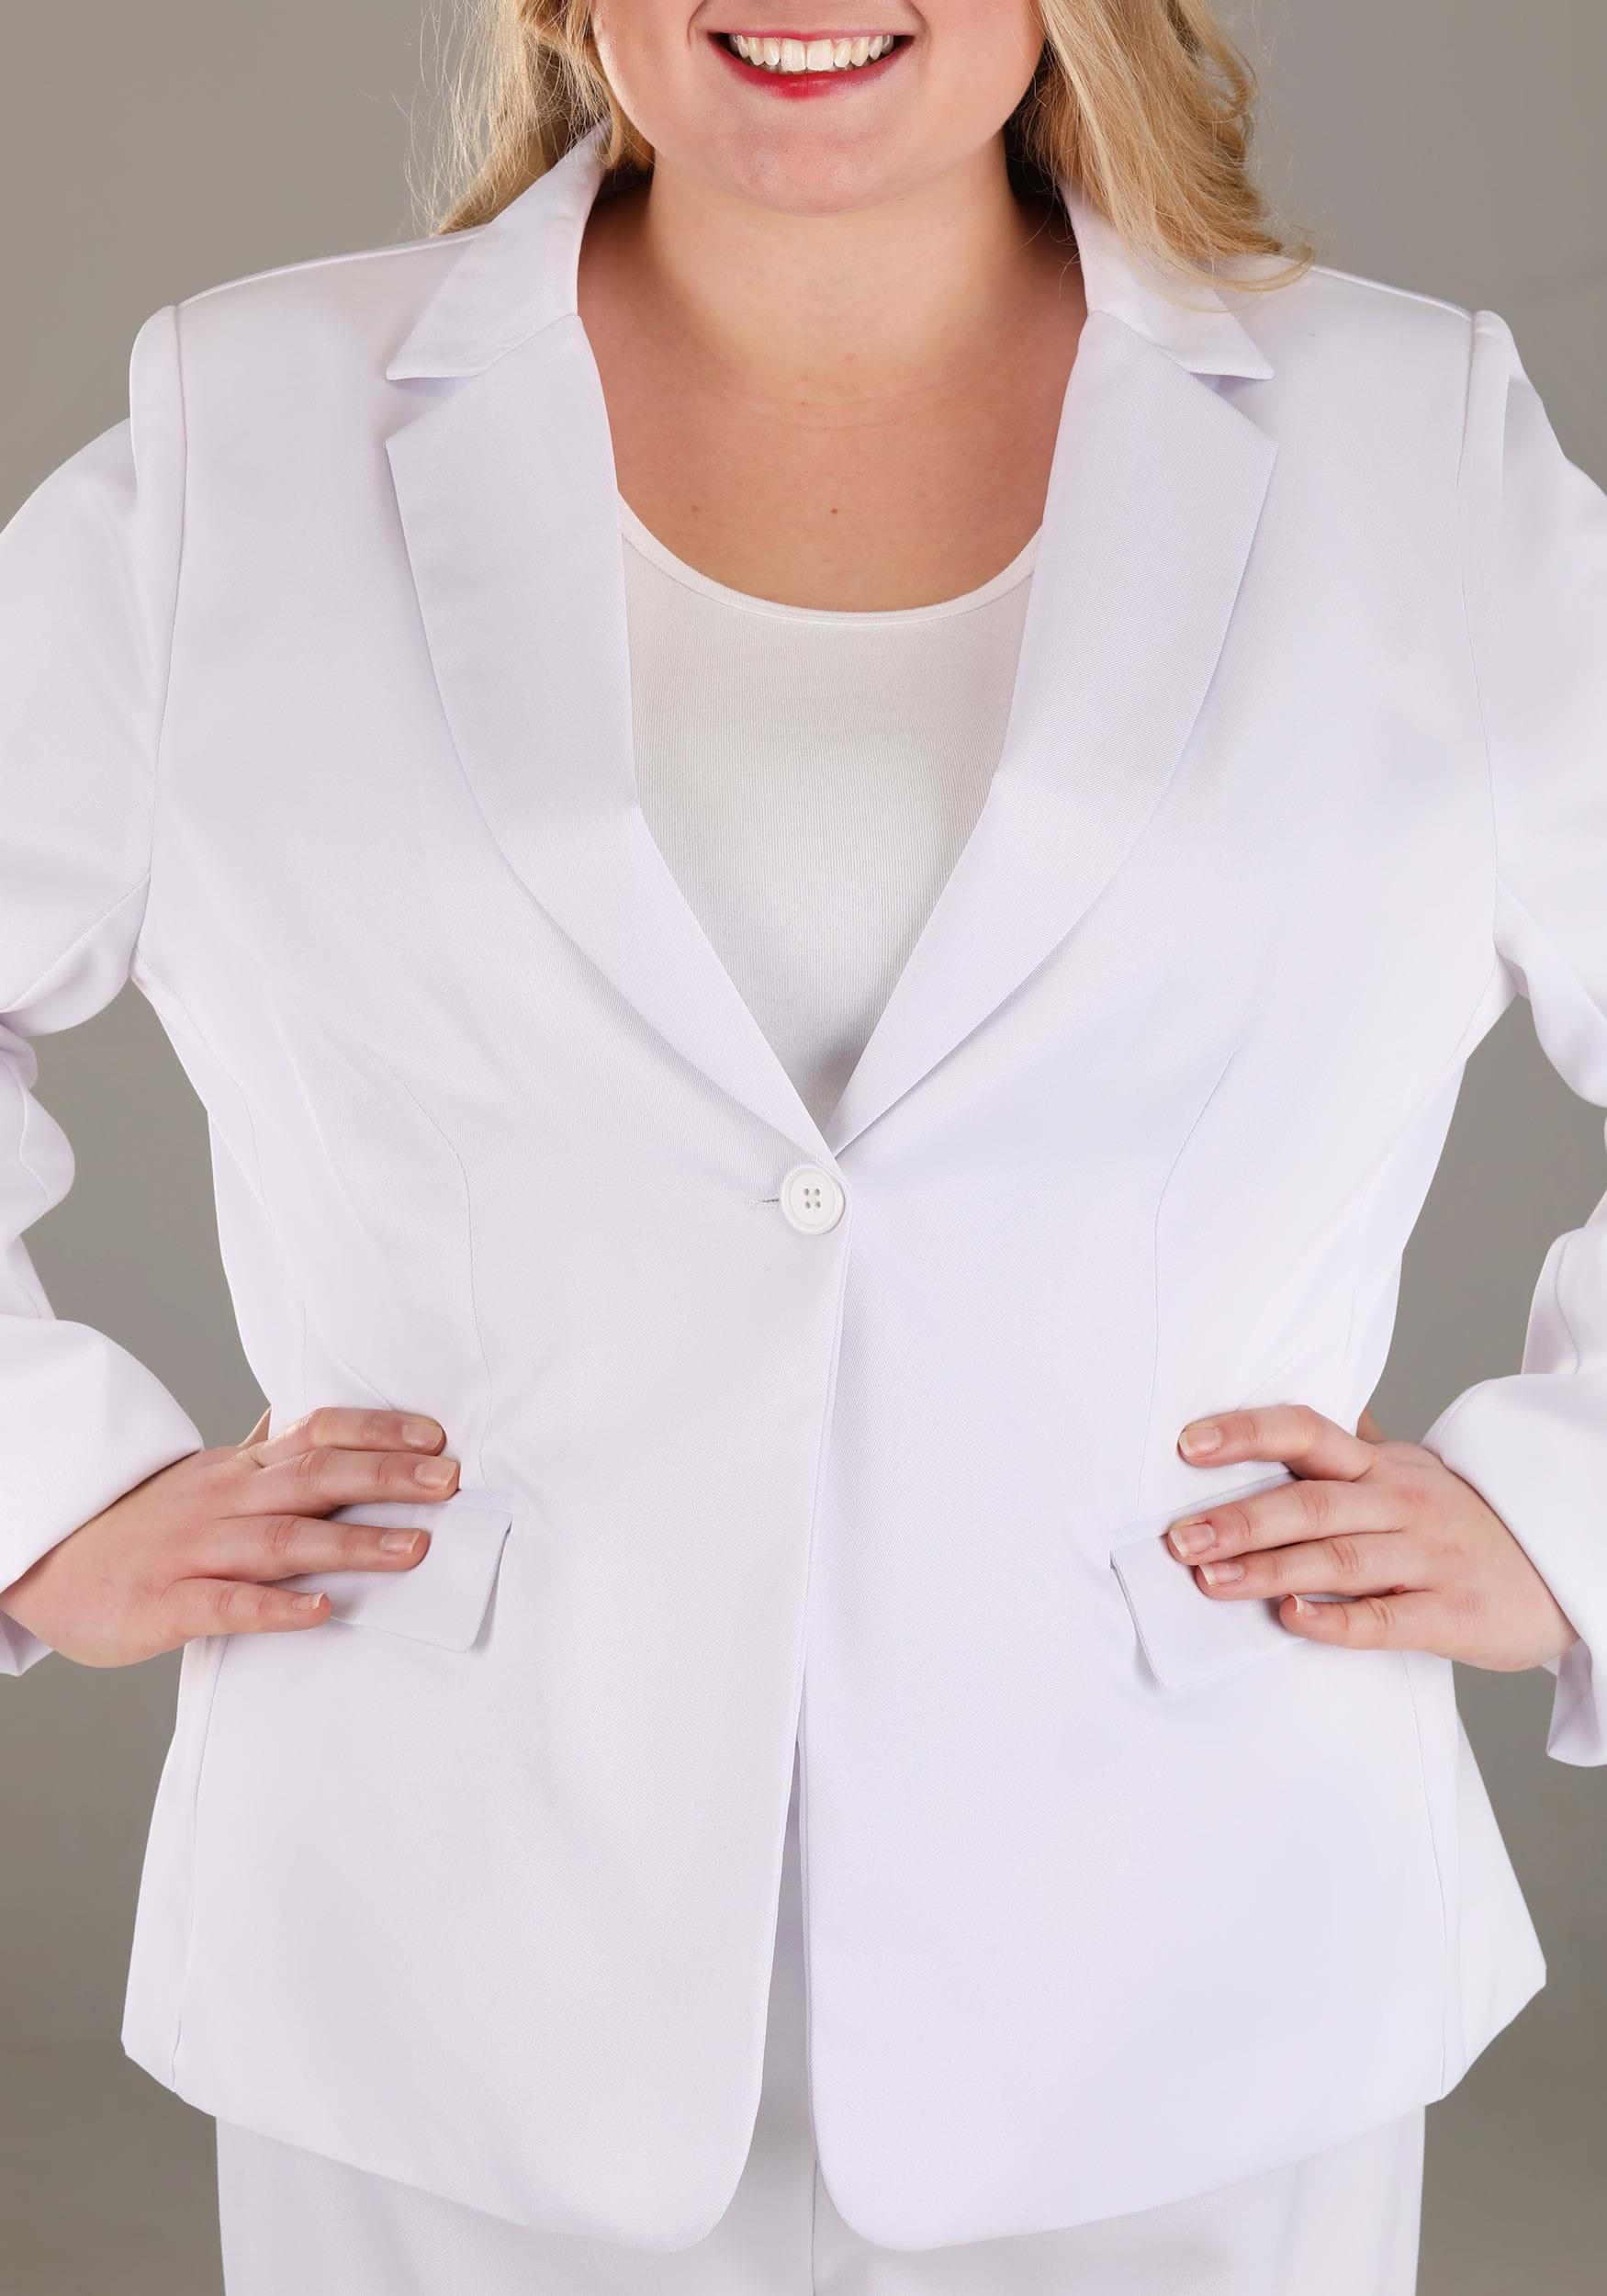 Women's Plus Size White Suit